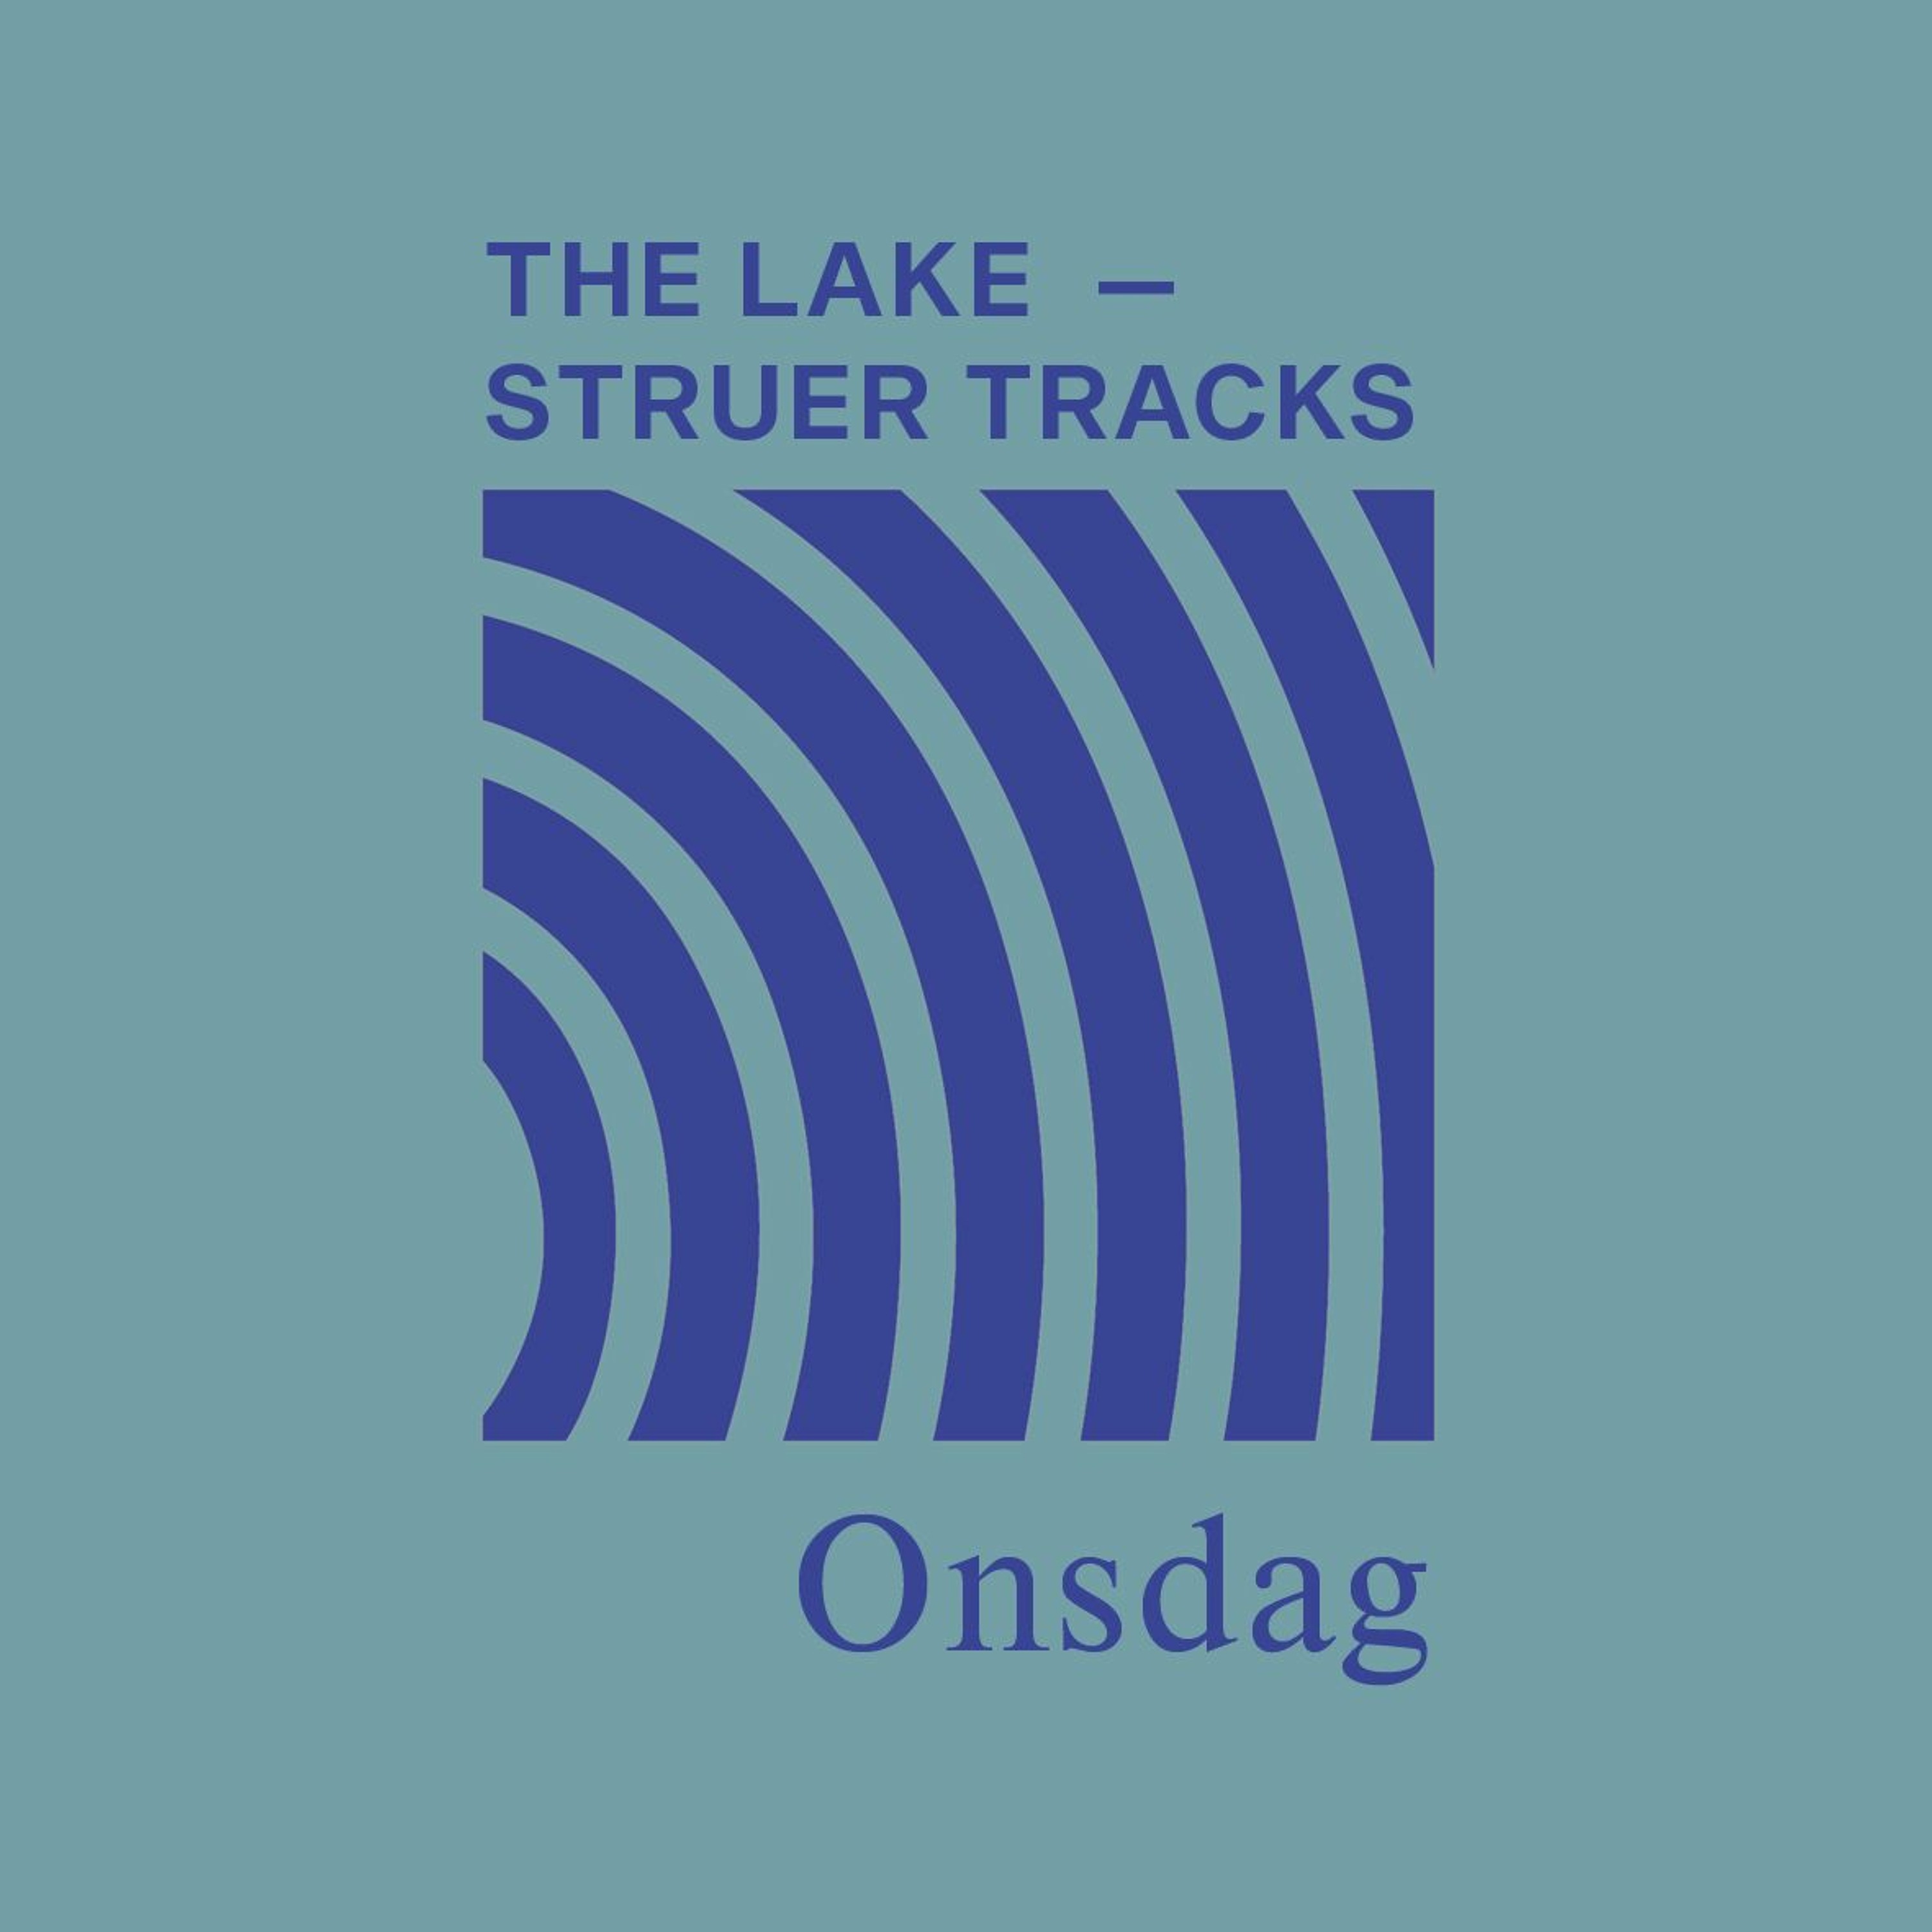 The Lake ⏤ Struer Tracks: Onsdag